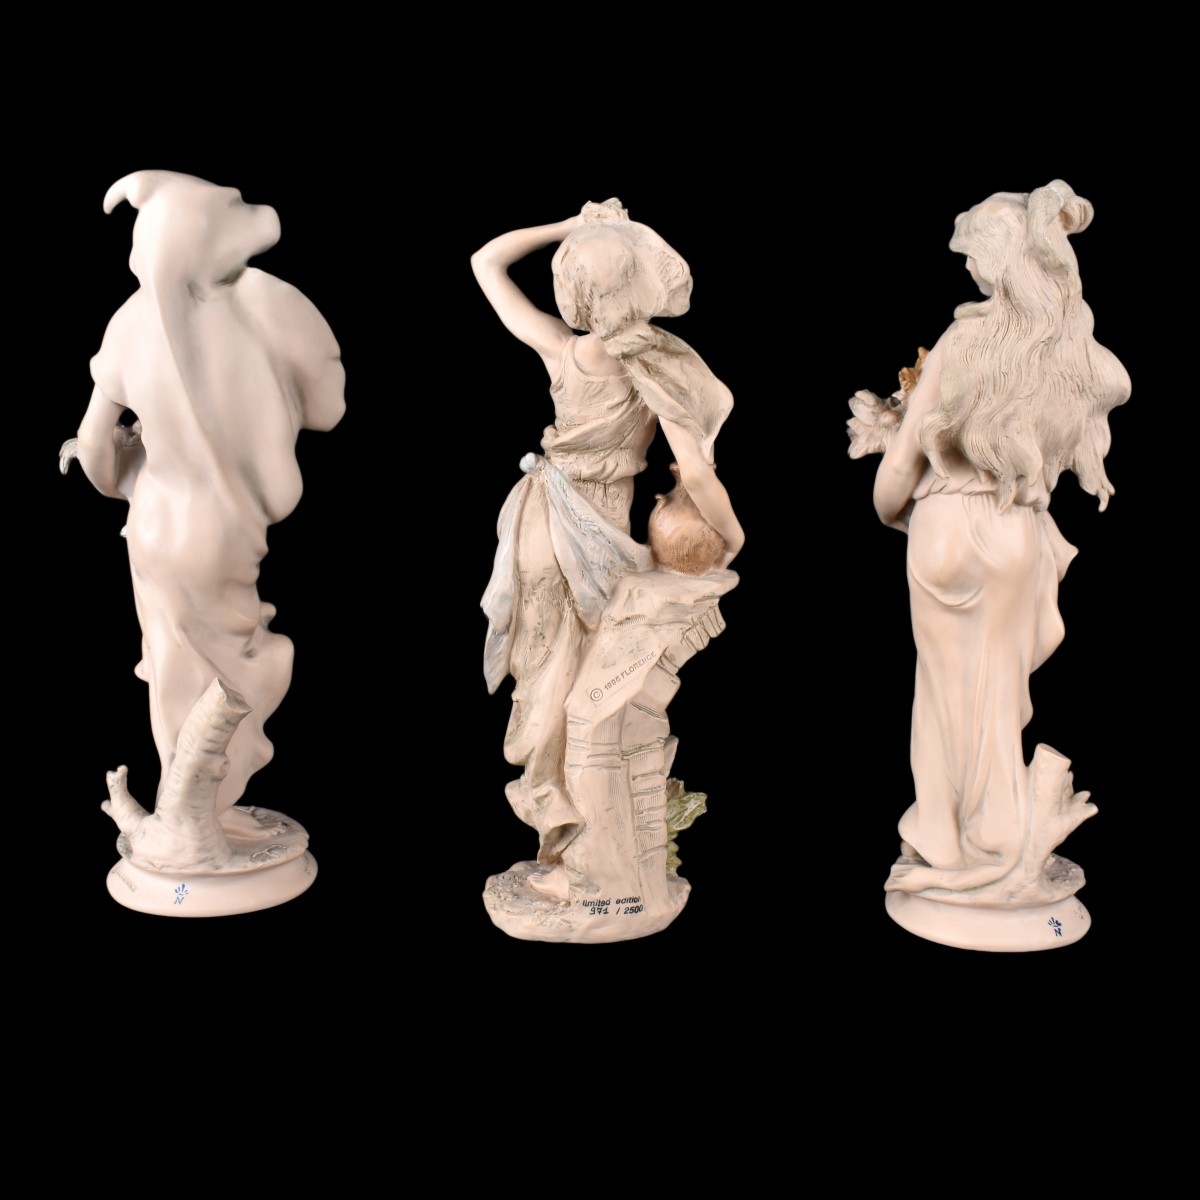 Three (3) Giuseppe Armani Figurines